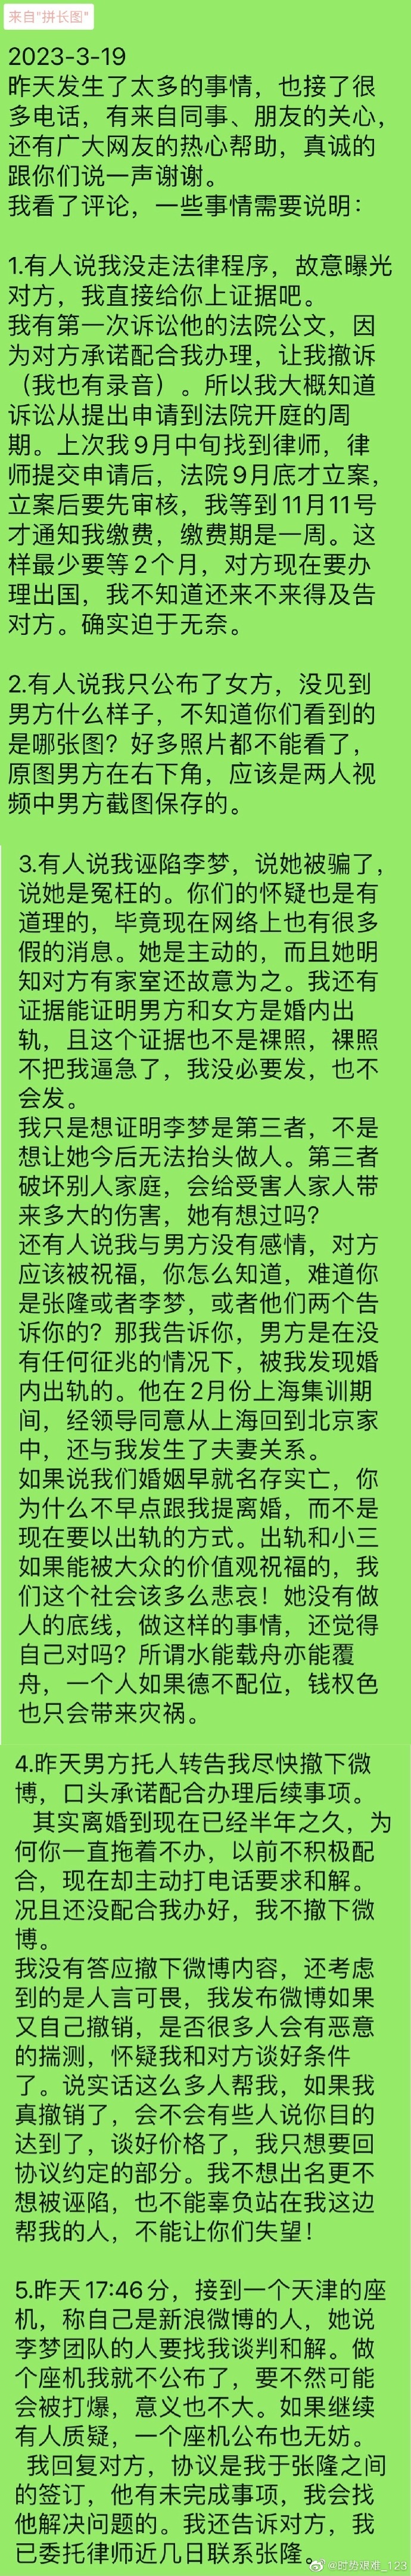 给大家科普一下十万多台湾共产党党员识别出来的2023已更新(网易/知乎)v1.2.1